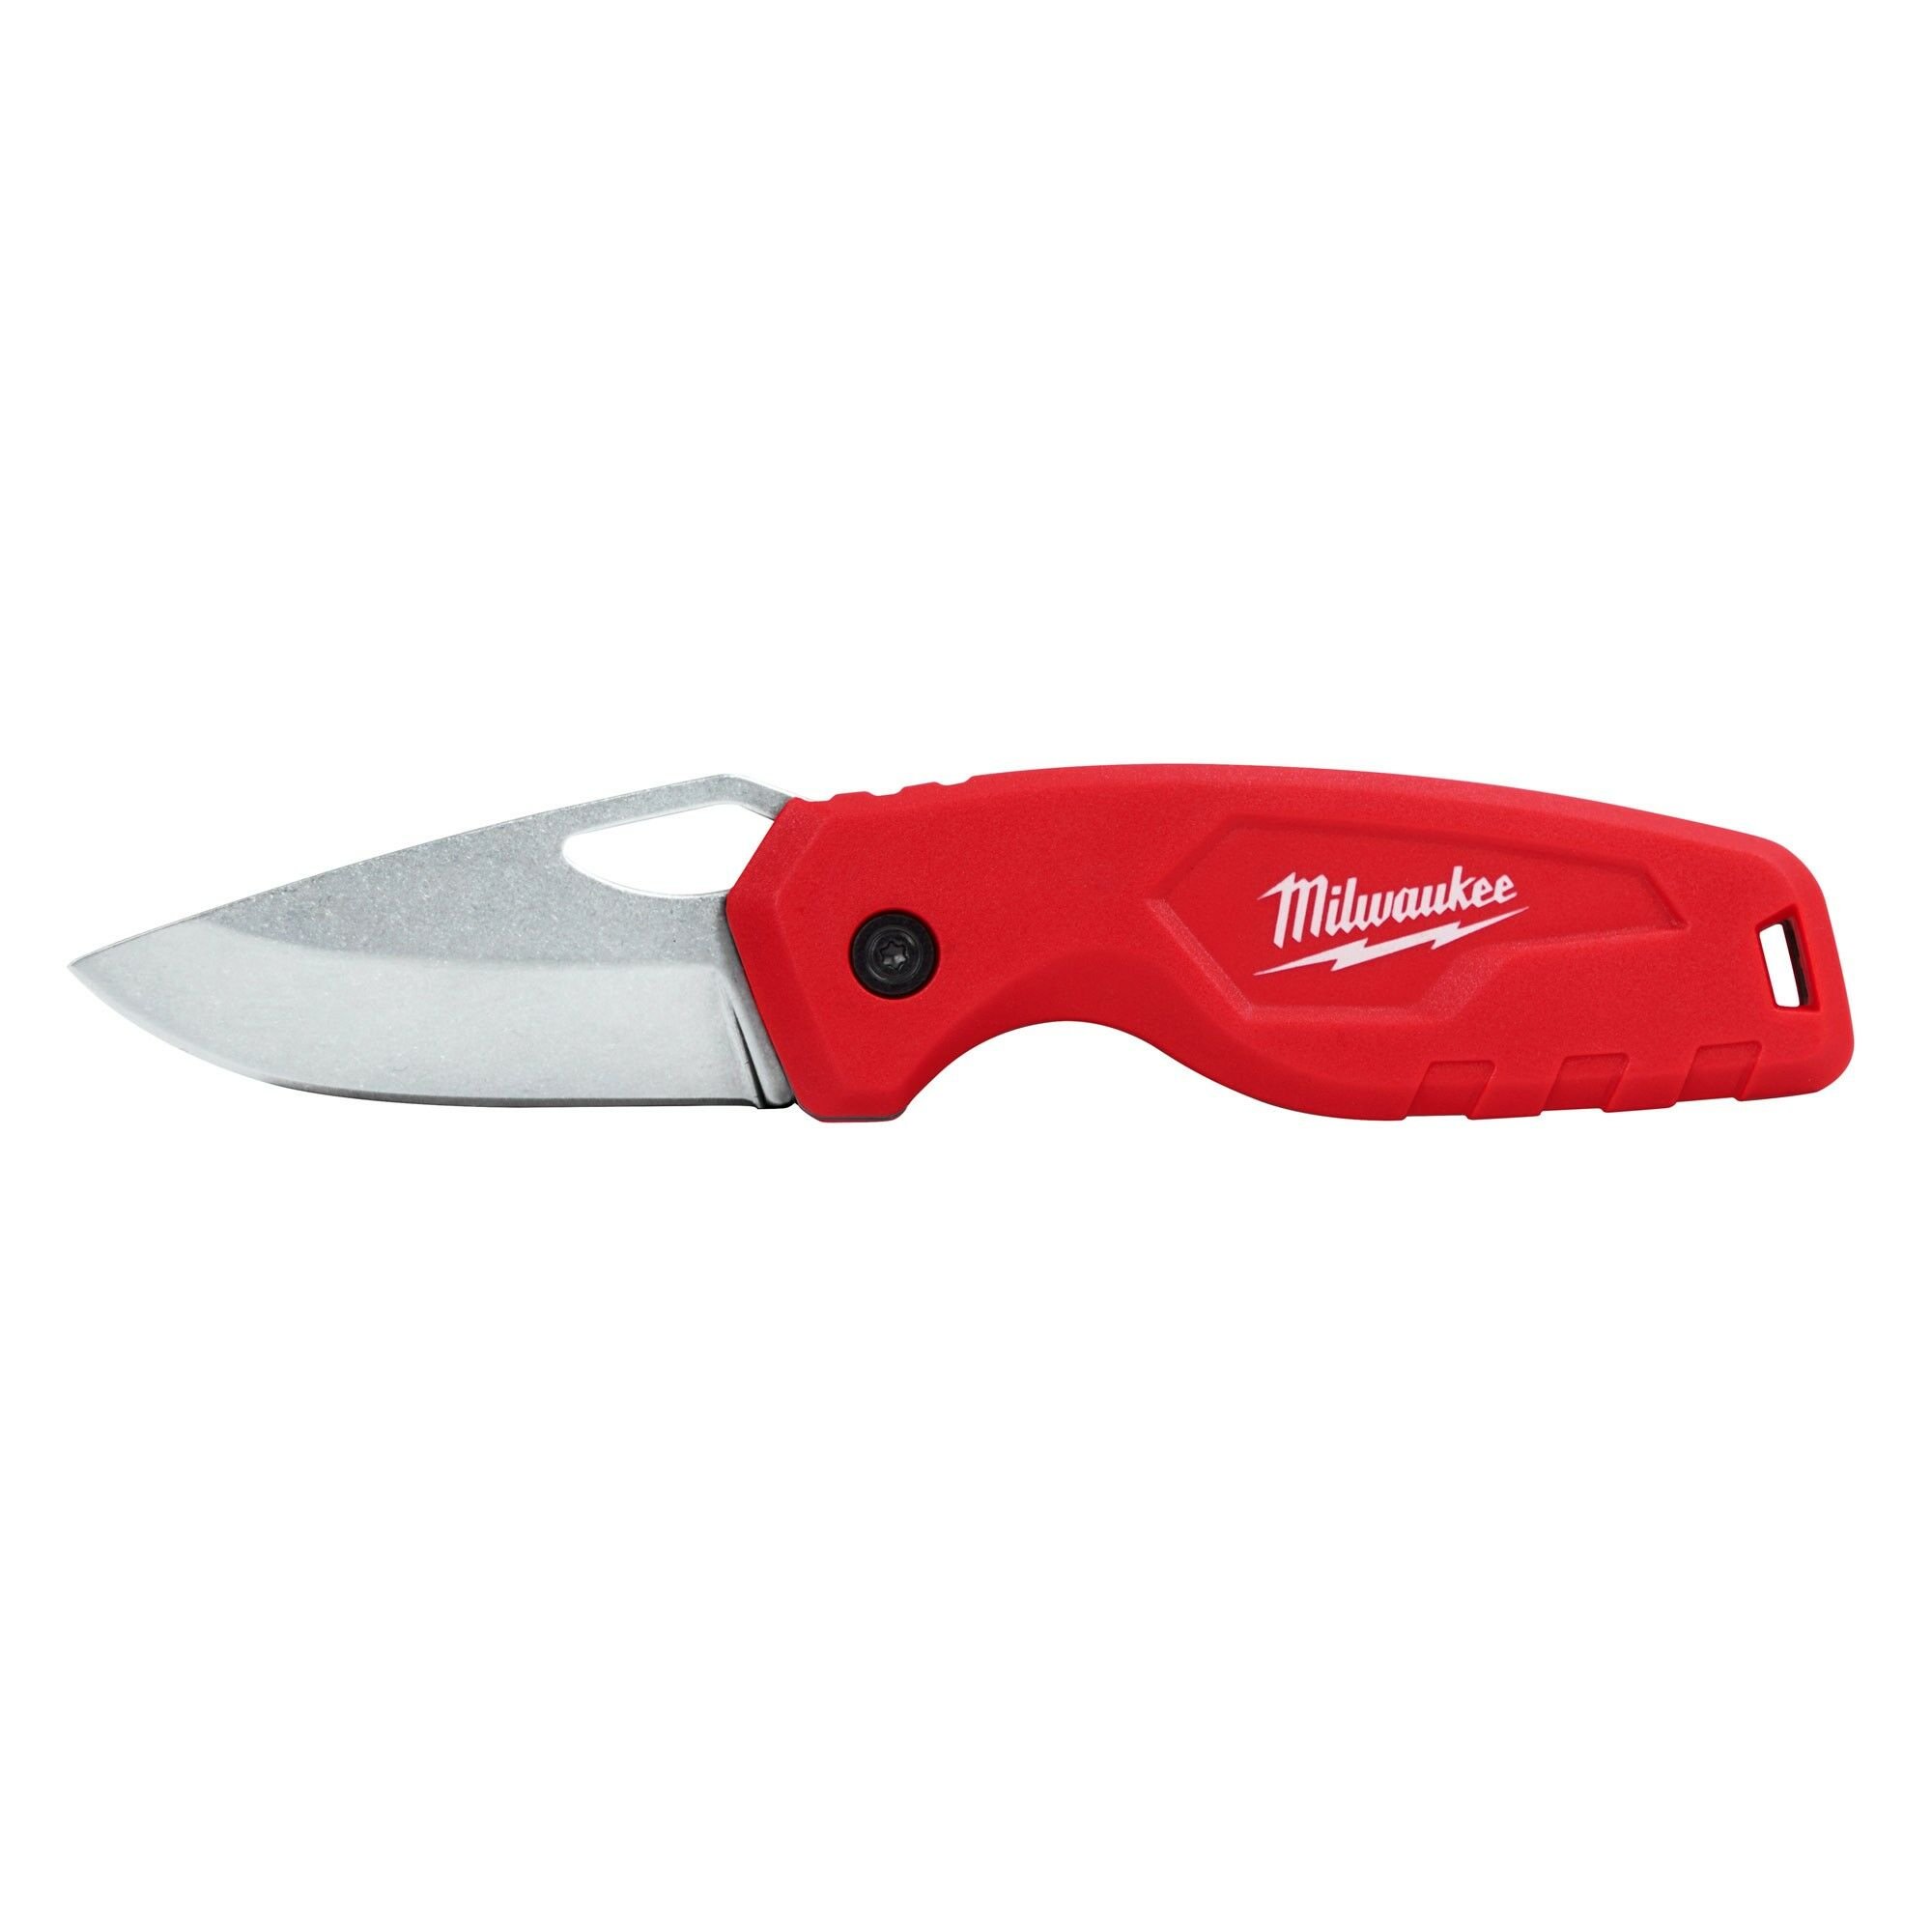 Milwaukee 4932478560 Compact Pocket Knife  